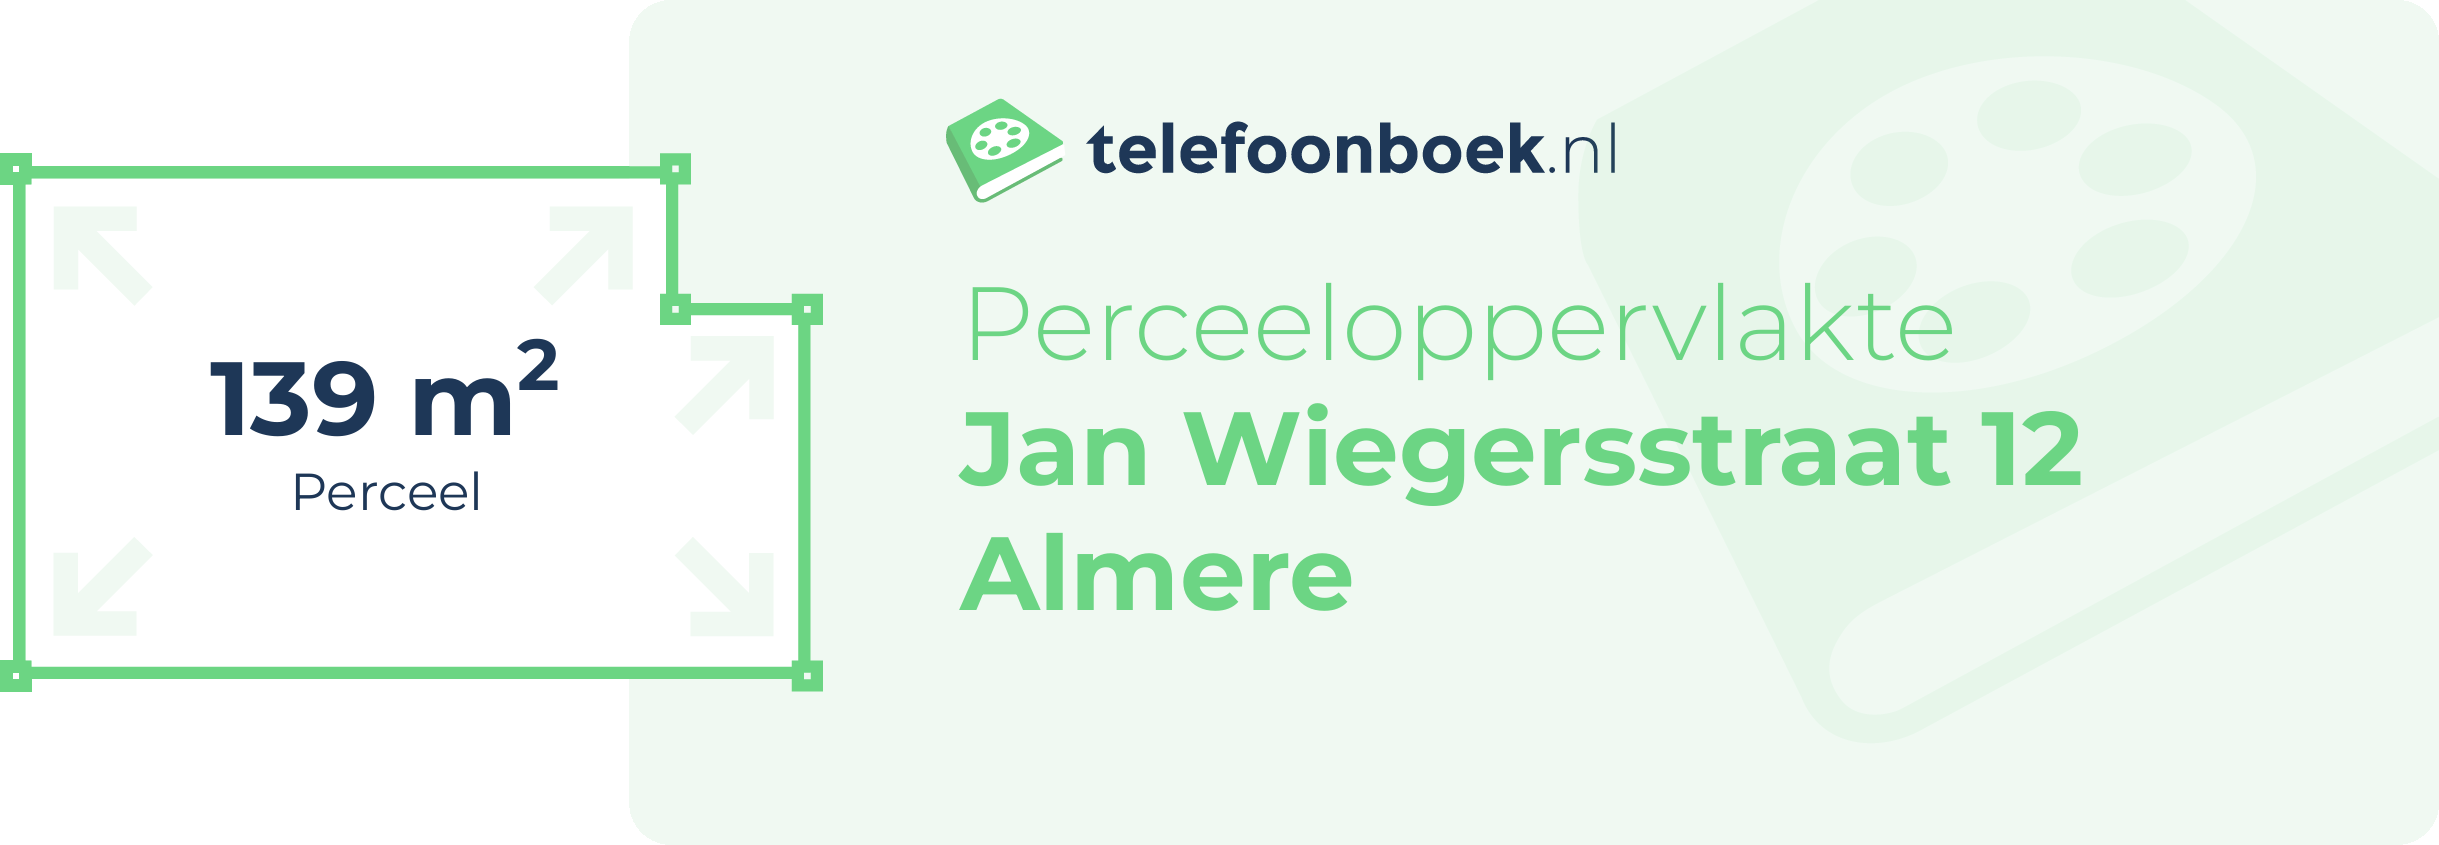 Perceeloppervlakte Jan Wiegersstraat 12 Almere